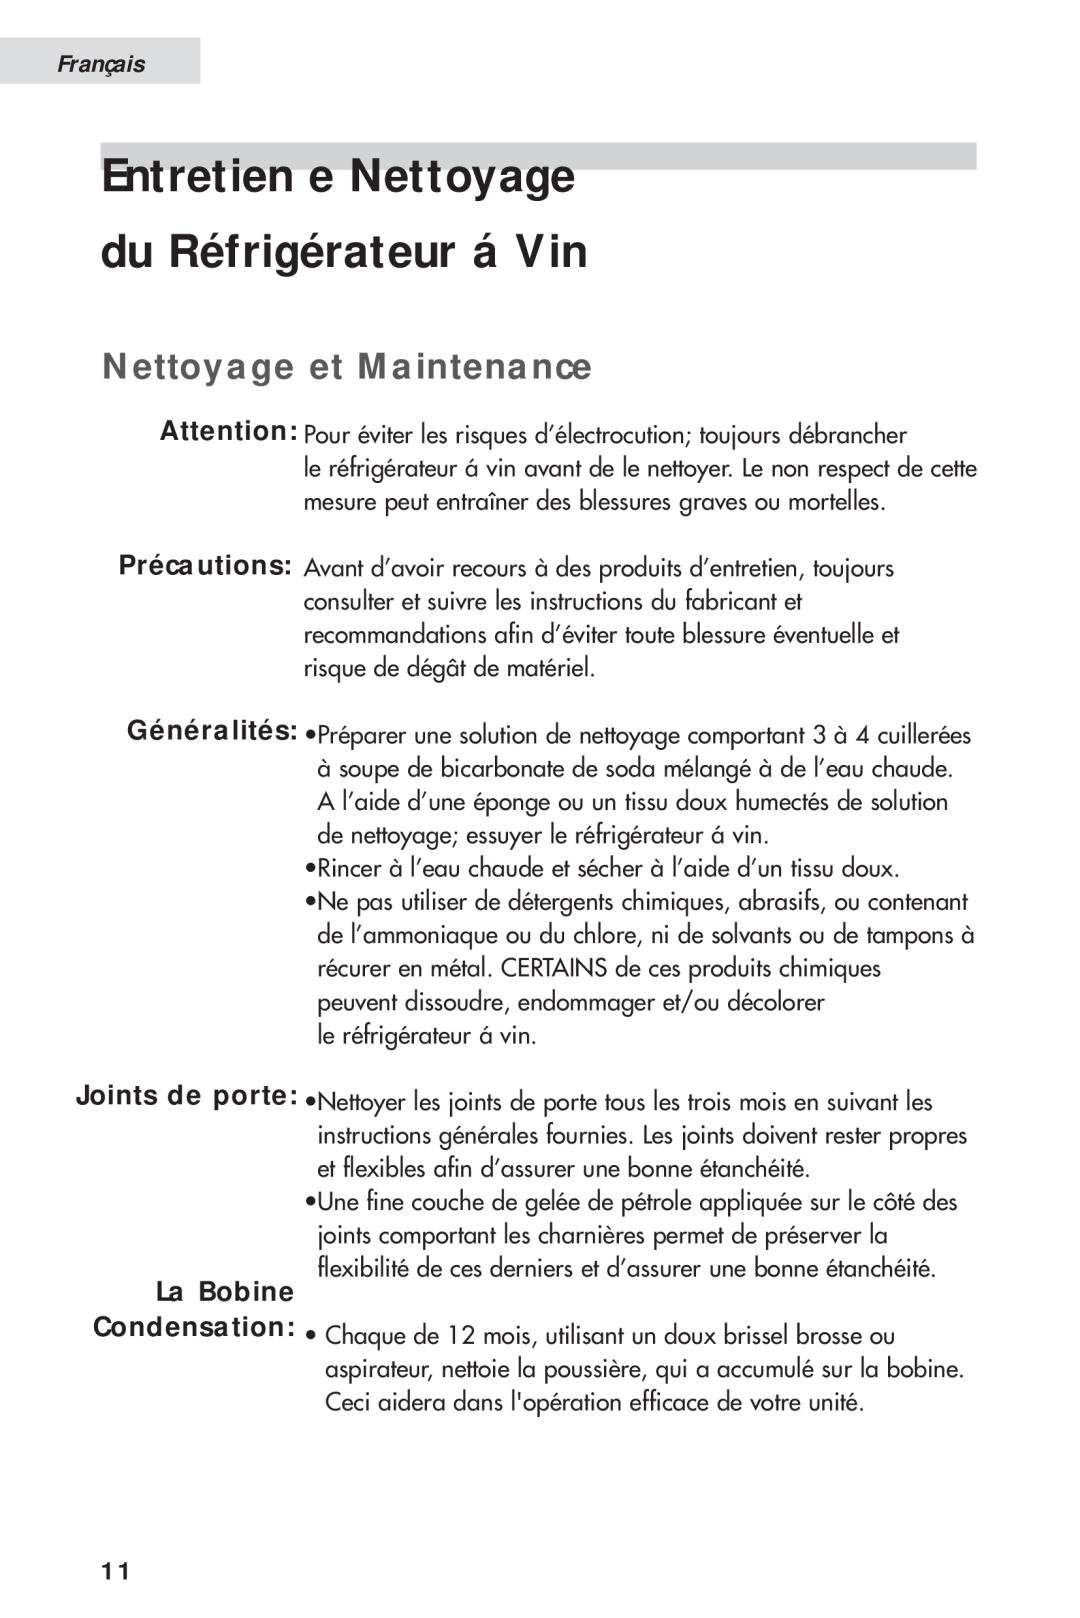 Haier HVH014A manual Entretien e Nettoyage du Réfrigérateur á Vin, Nettoyage et Maintenance, La Bobine, Français 